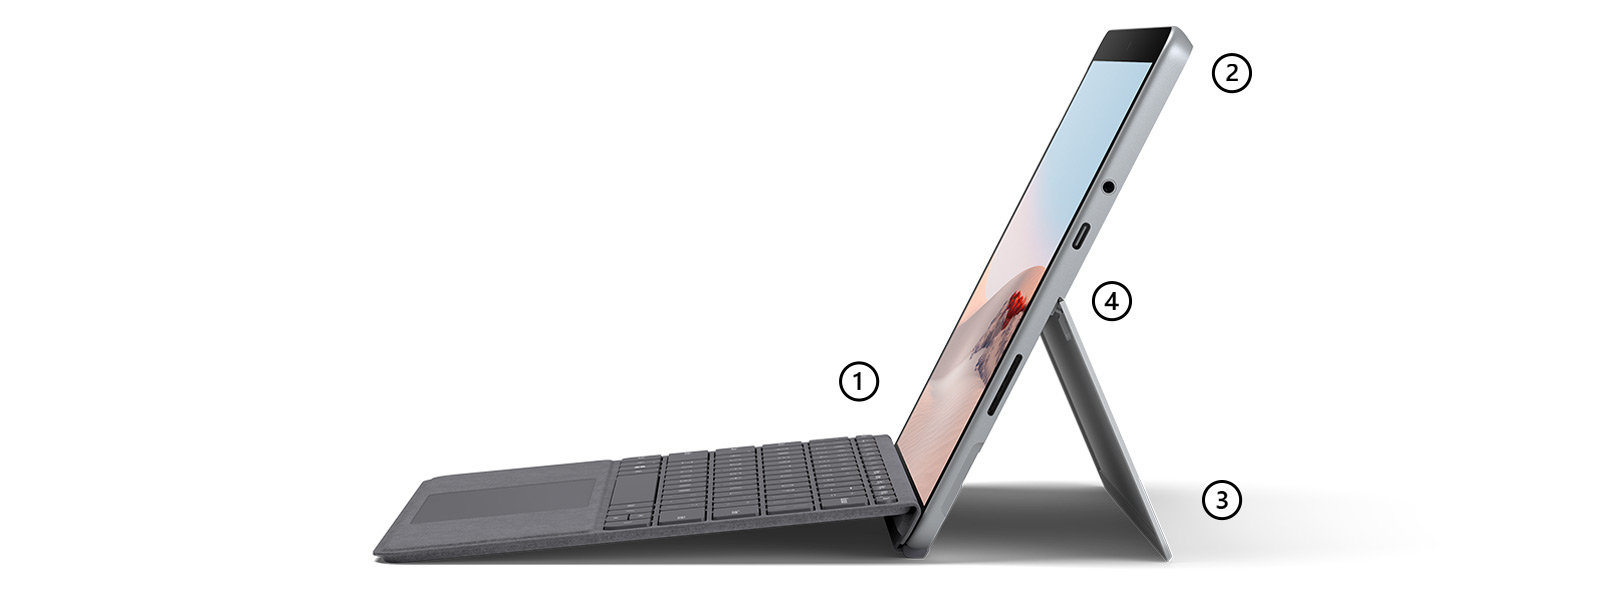 펜 지원 터치 스크린, 마이크 및 카메라, 킥 스탠드 및 USB-C 포트를 강조하는 포인트가 있는 노트북 모드의 Surface Go 2과 플래티넘 색상의 Surface Go 시그니처 타이핑 커버